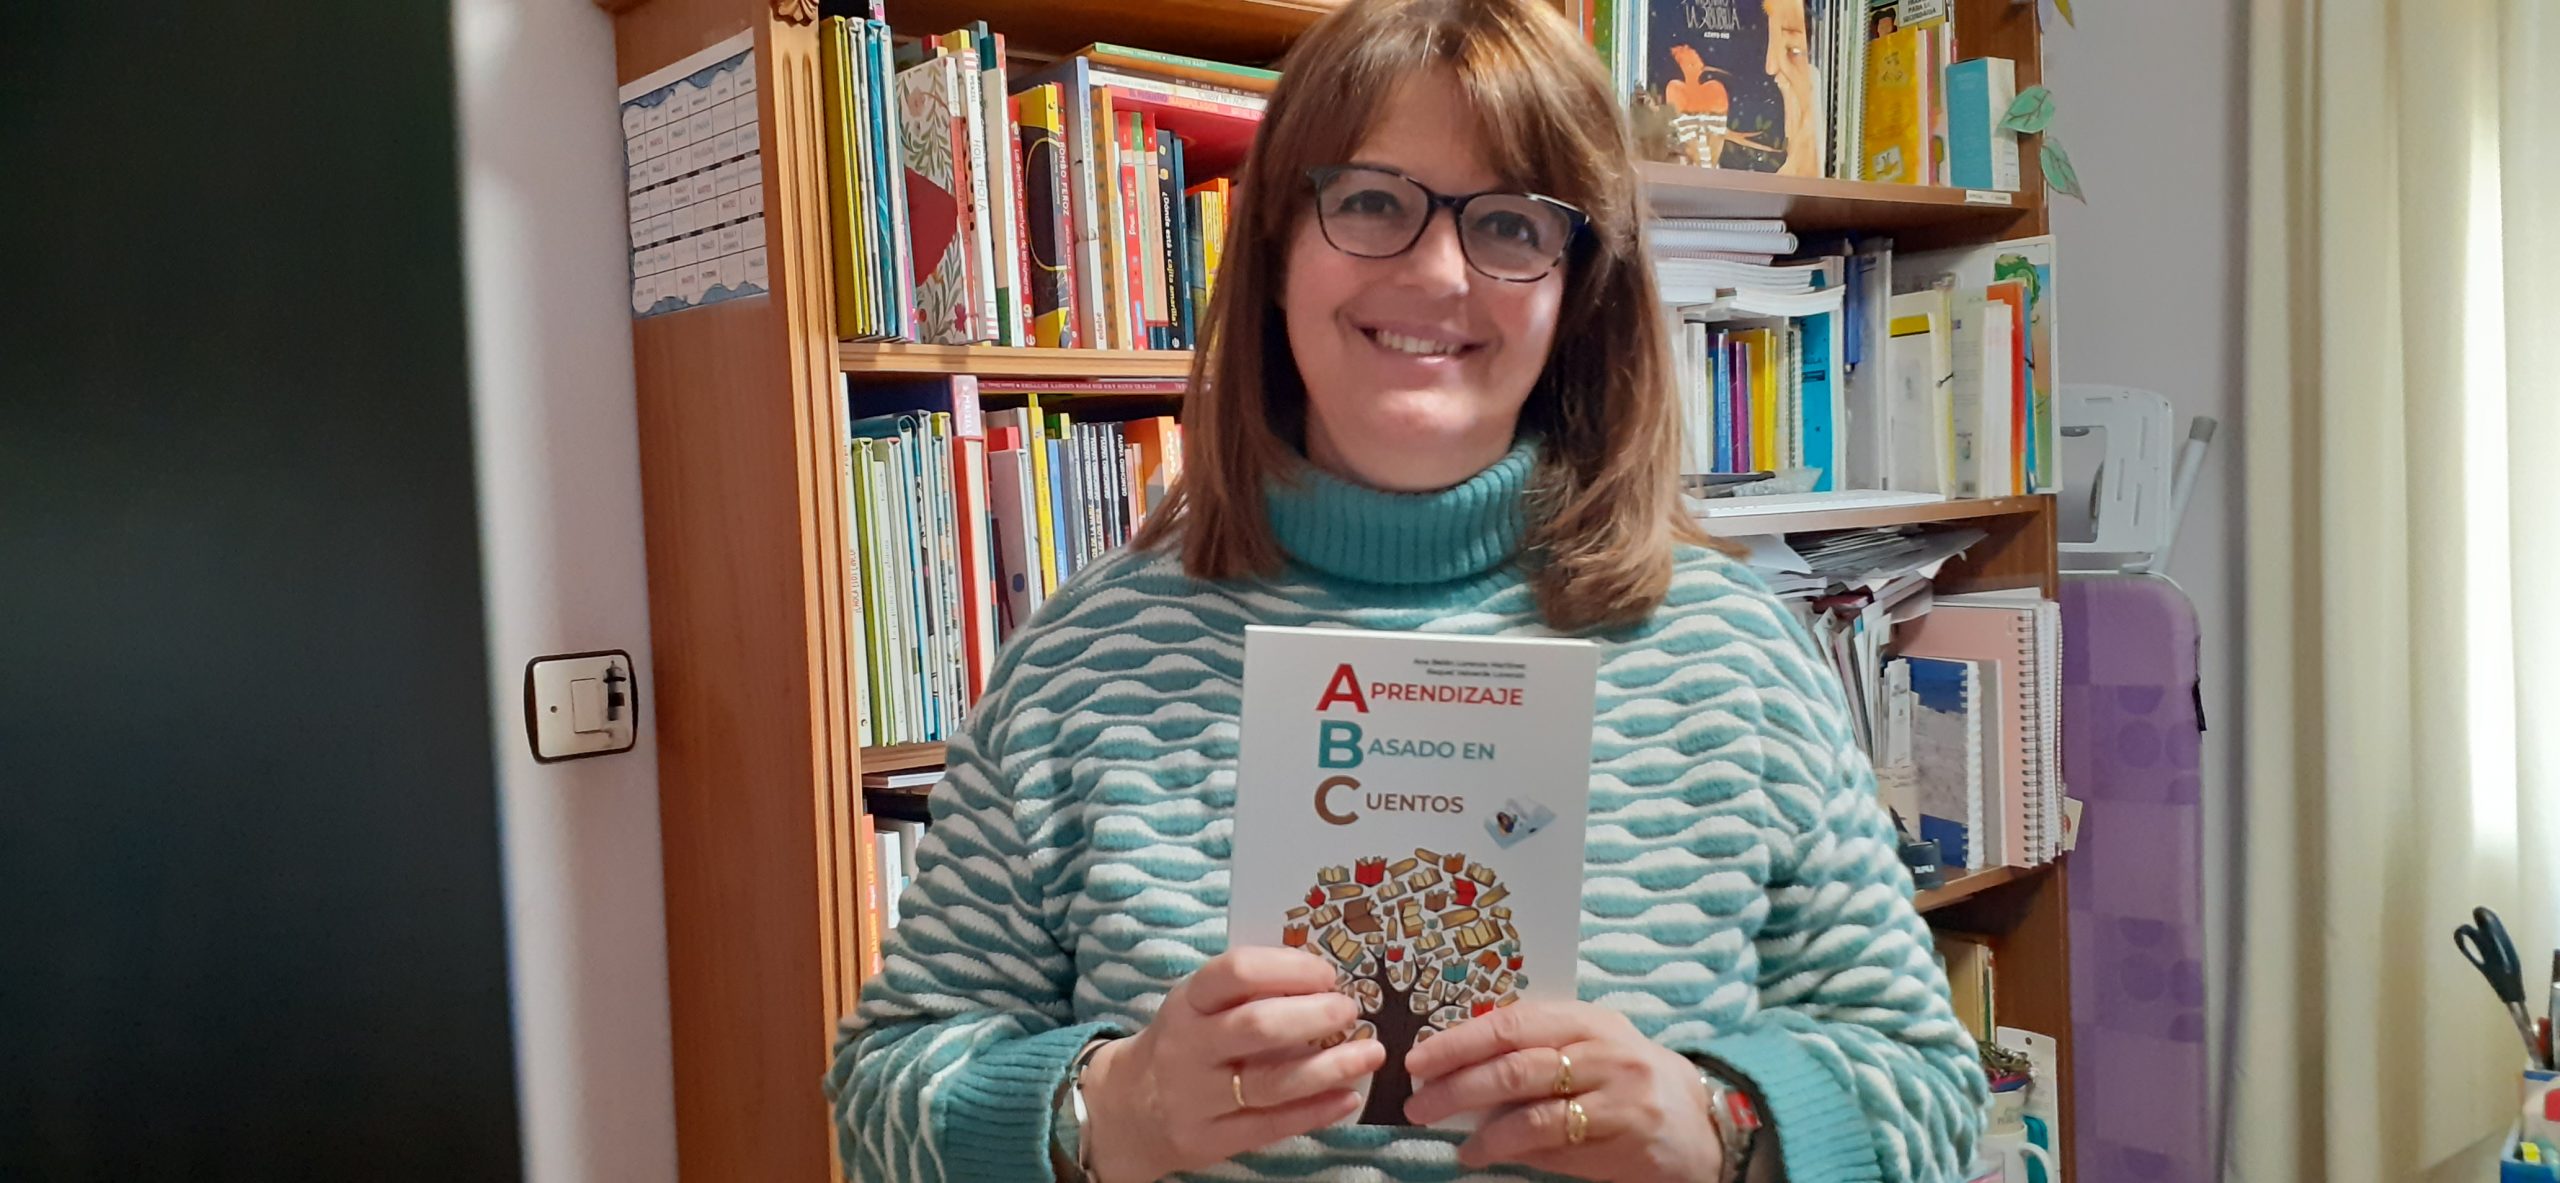 Ana Belén Lorenzo Martínez nos habla de su primera obra, «ABC Aprendizaje Basado en Cuentos: Experiencias en el aula de infantil. Fomentar la lectura desde pequeños.»